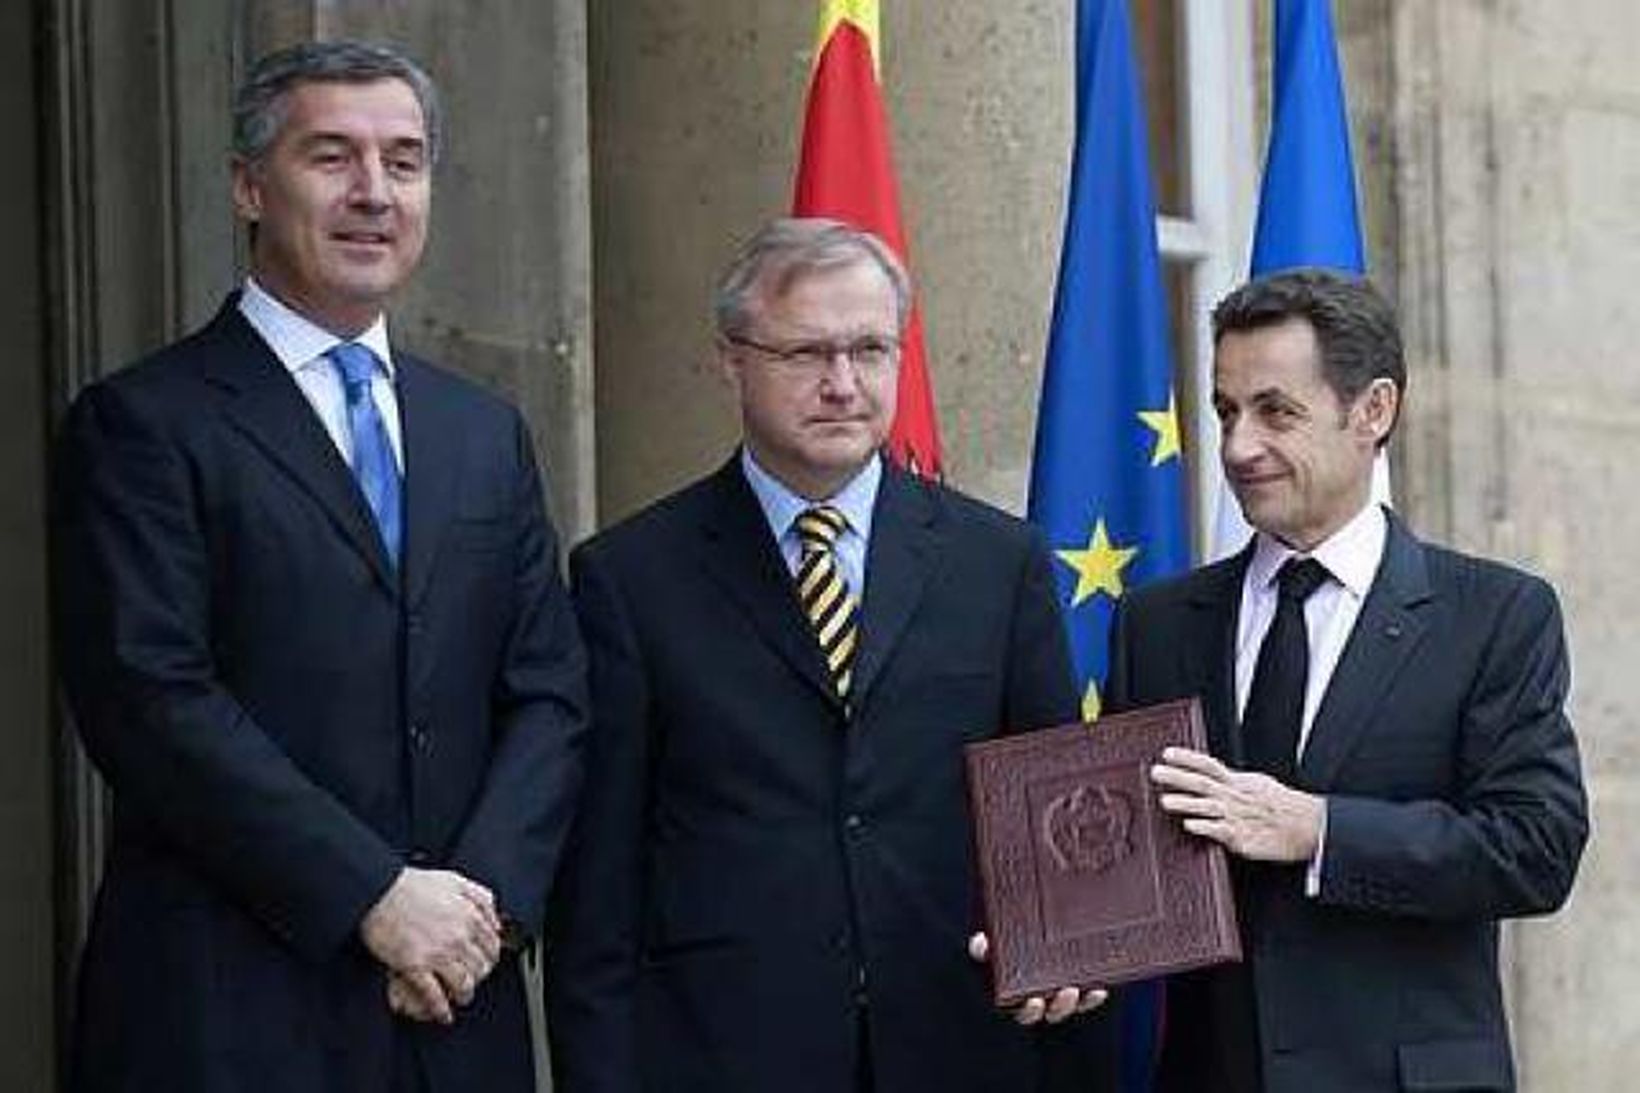 Milo Djukanovic ásamt Olli Rehn og Nicolas Sarkozy á tröppum …